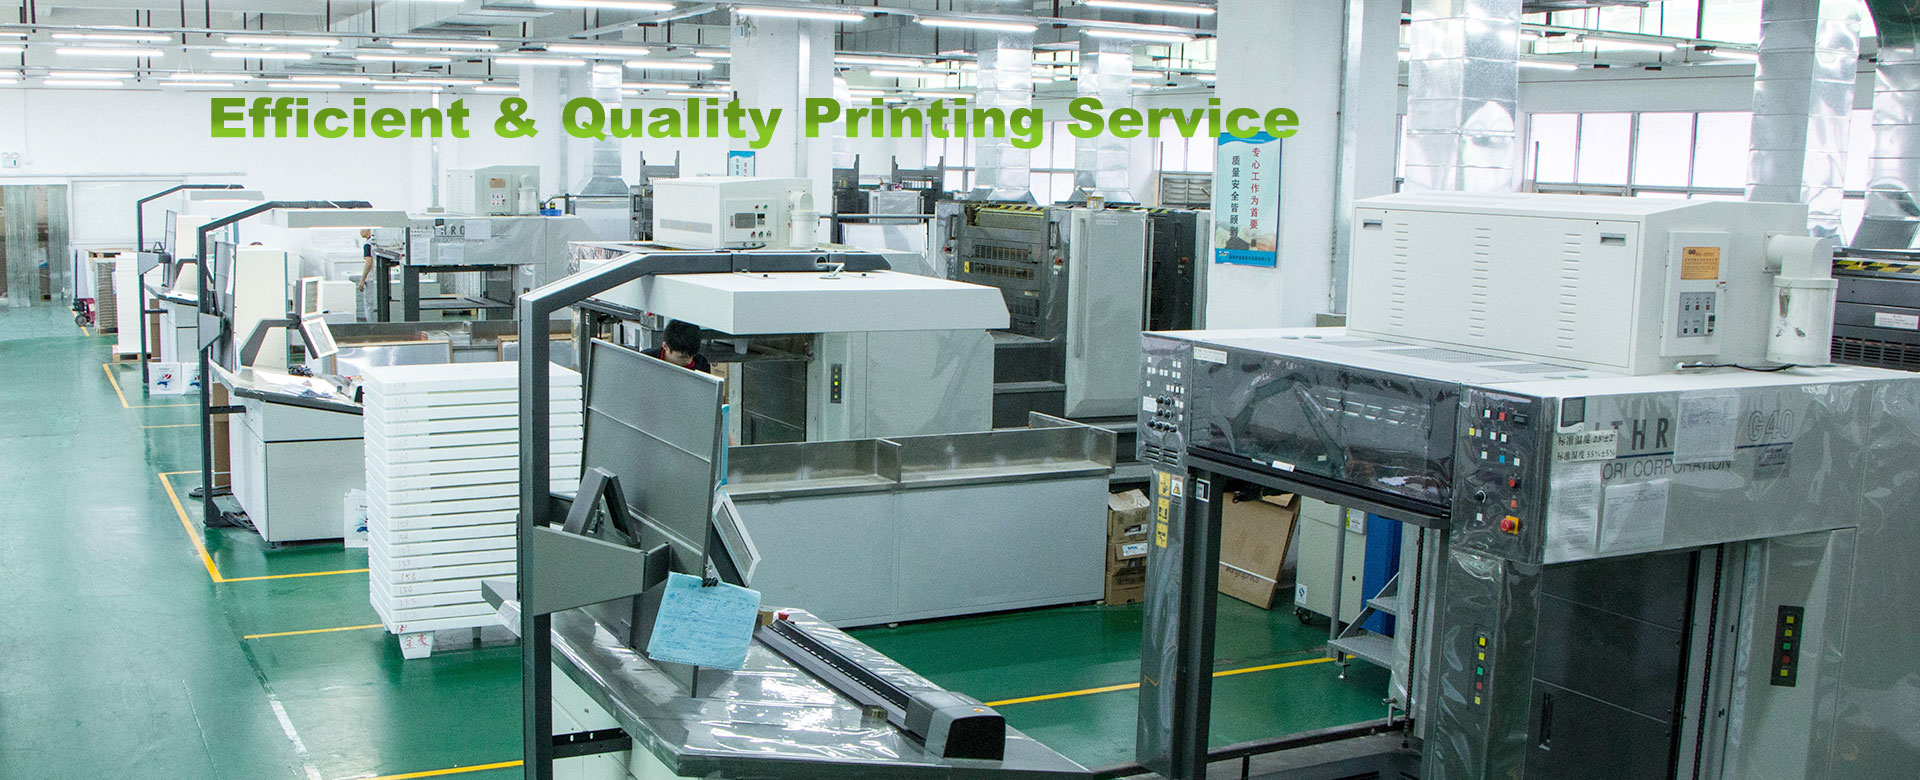 카탈로그 인쇄 제조업체